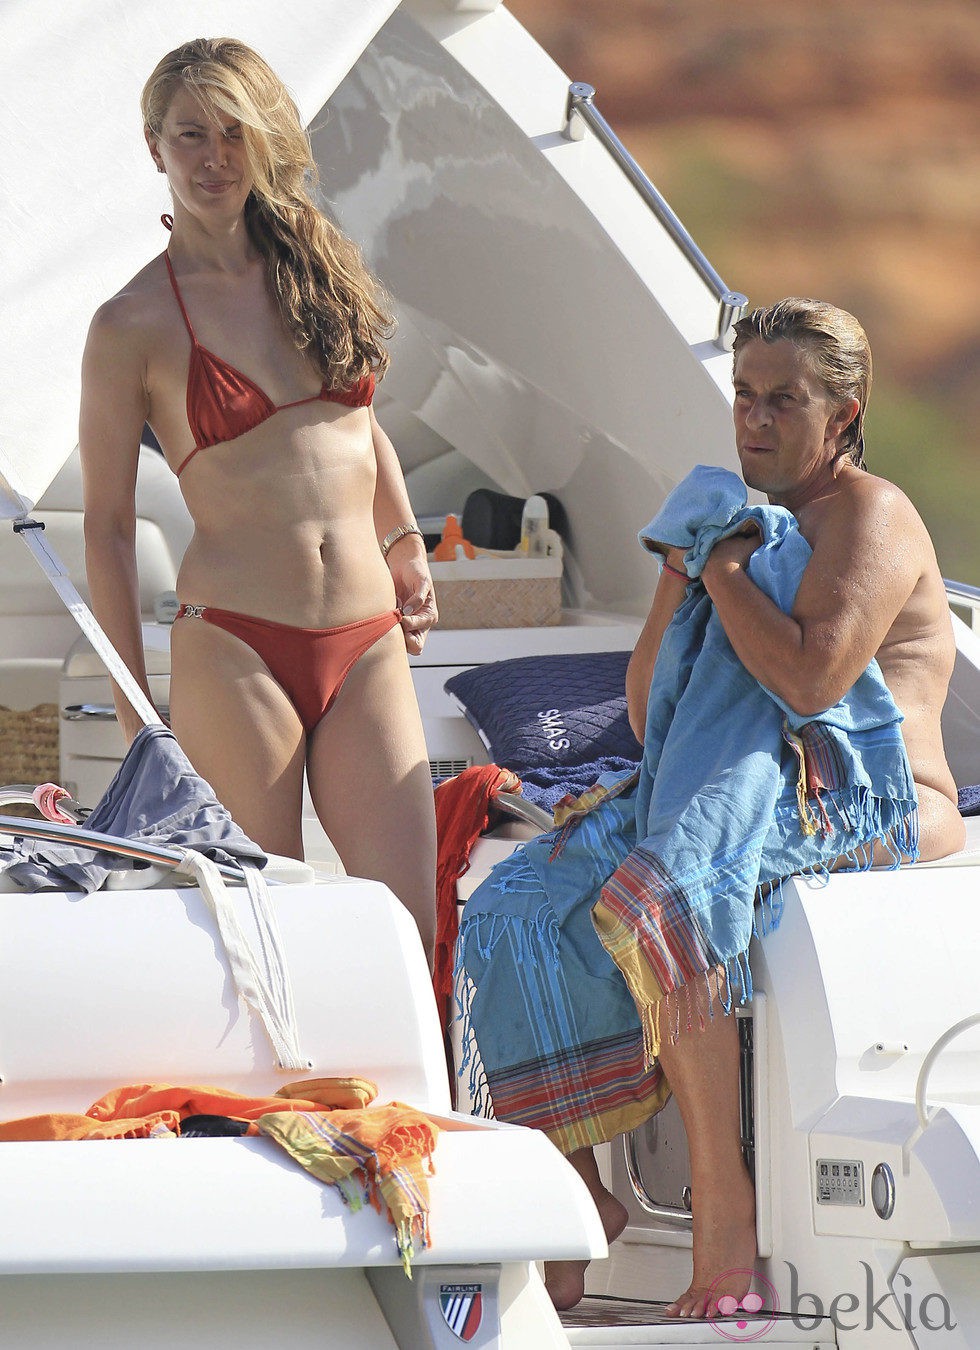 Sofía Mazagatos y Chelo García Cortés durante sus vacaciones en Ibiza